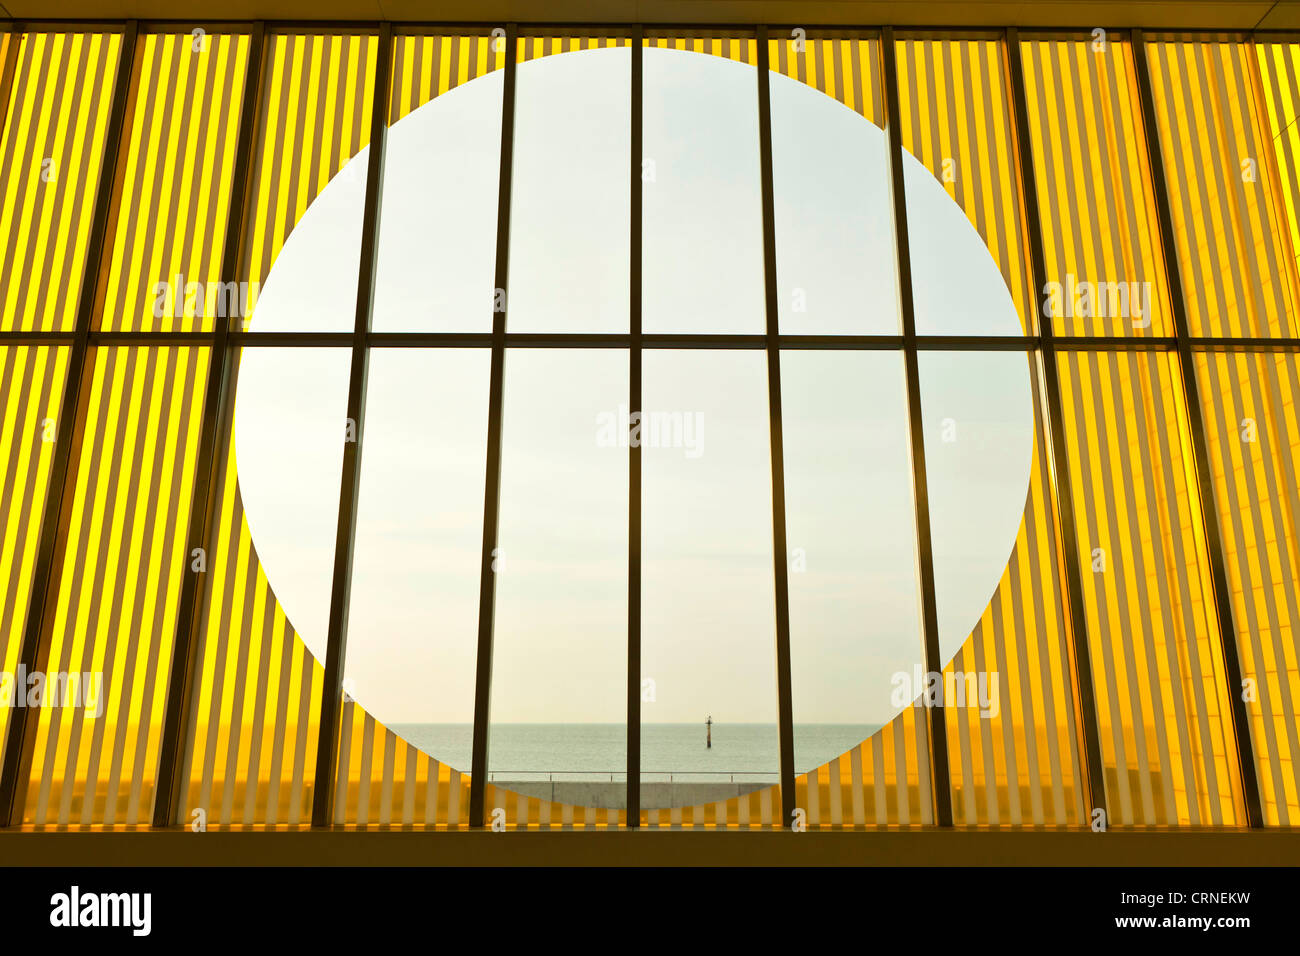 Ein Blick durch das Glas innen Bildschirm Turner Contemporary Gallery in Margate. Stockfoto